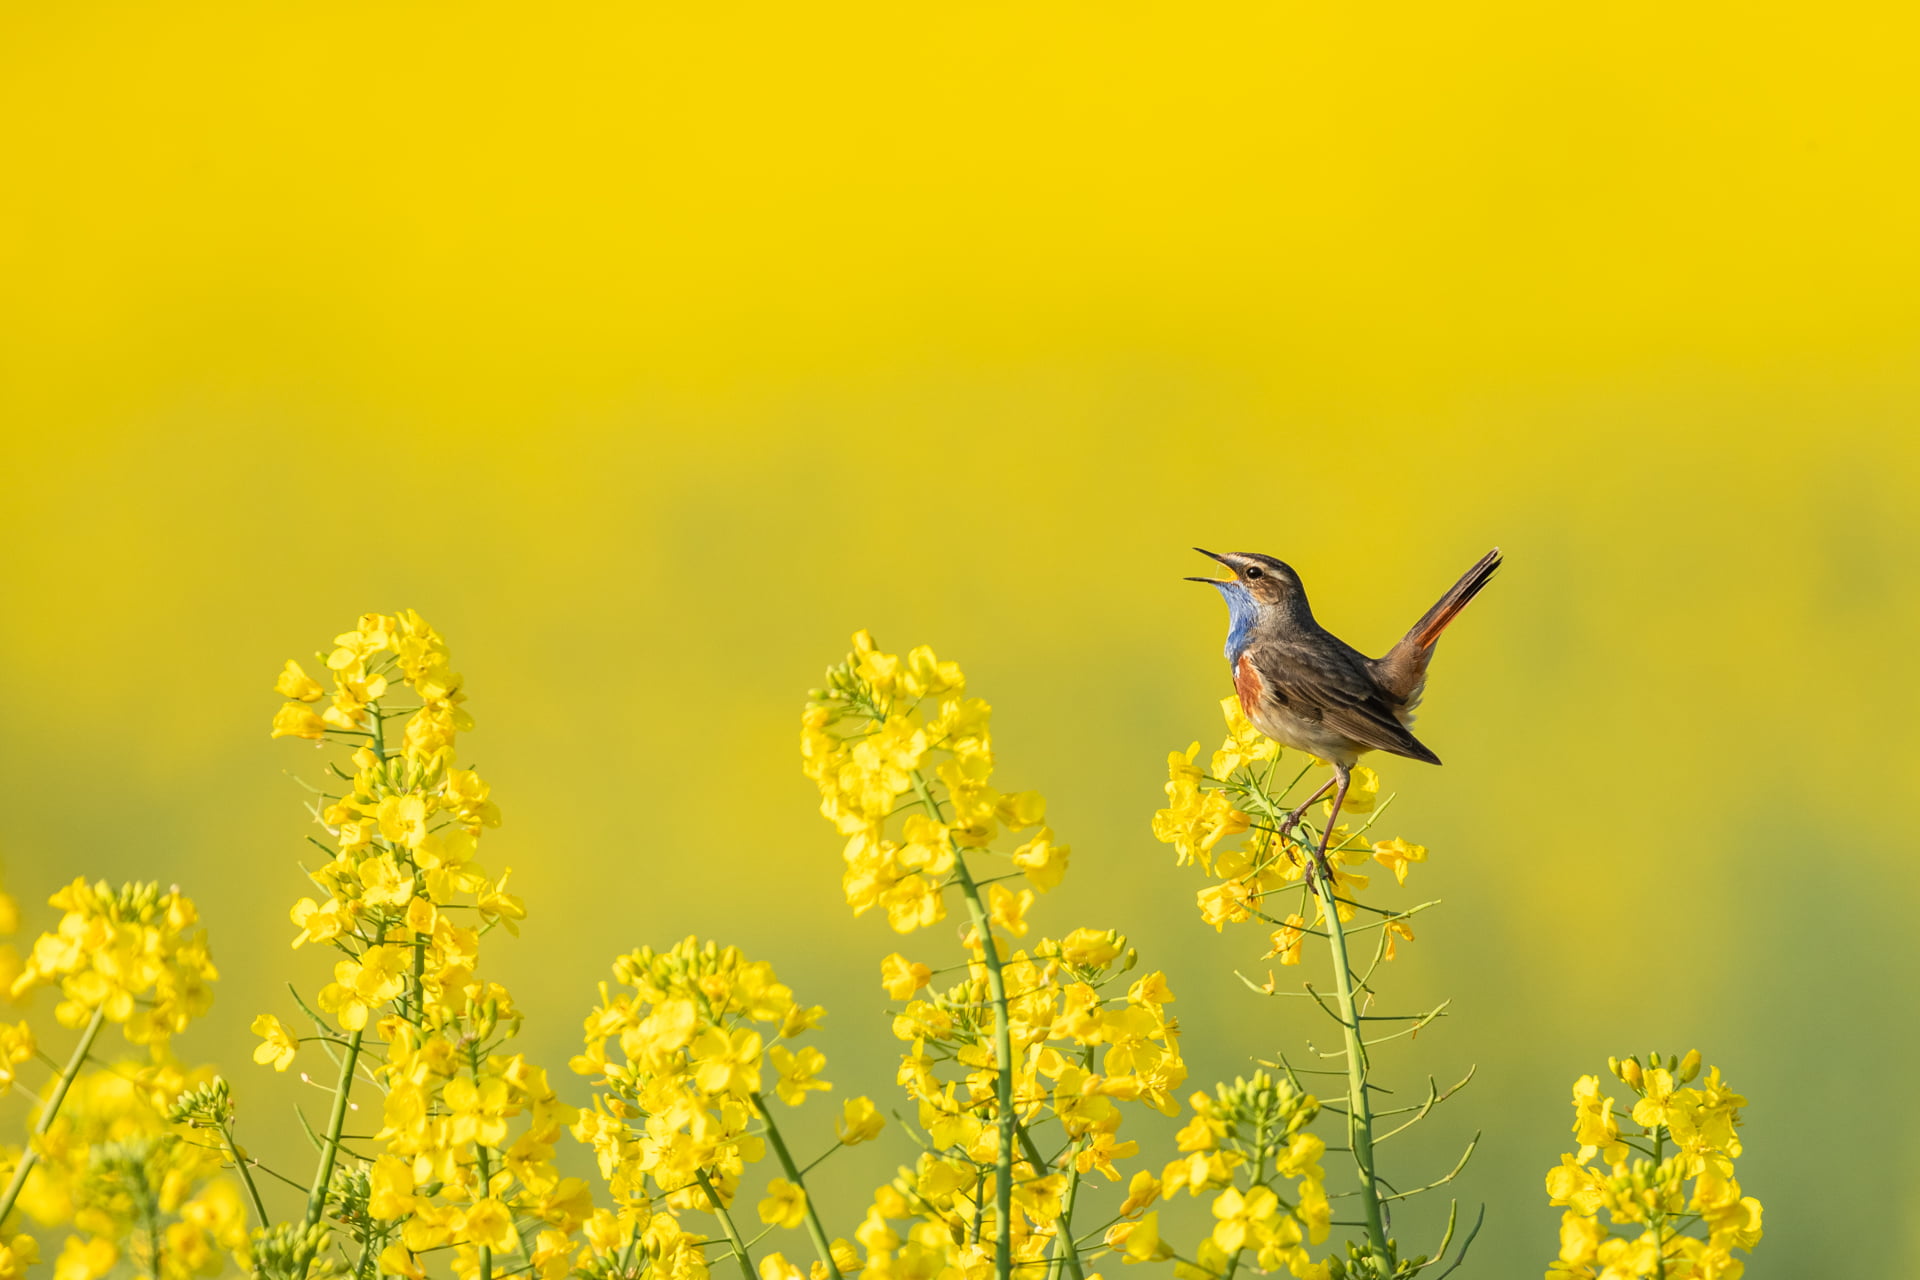 Gorgebleue à miroir chante dans un champ de colza, Baie de somme - Bluethroat sings in a rapeseed field, Baie de somme / Luscinia svecica